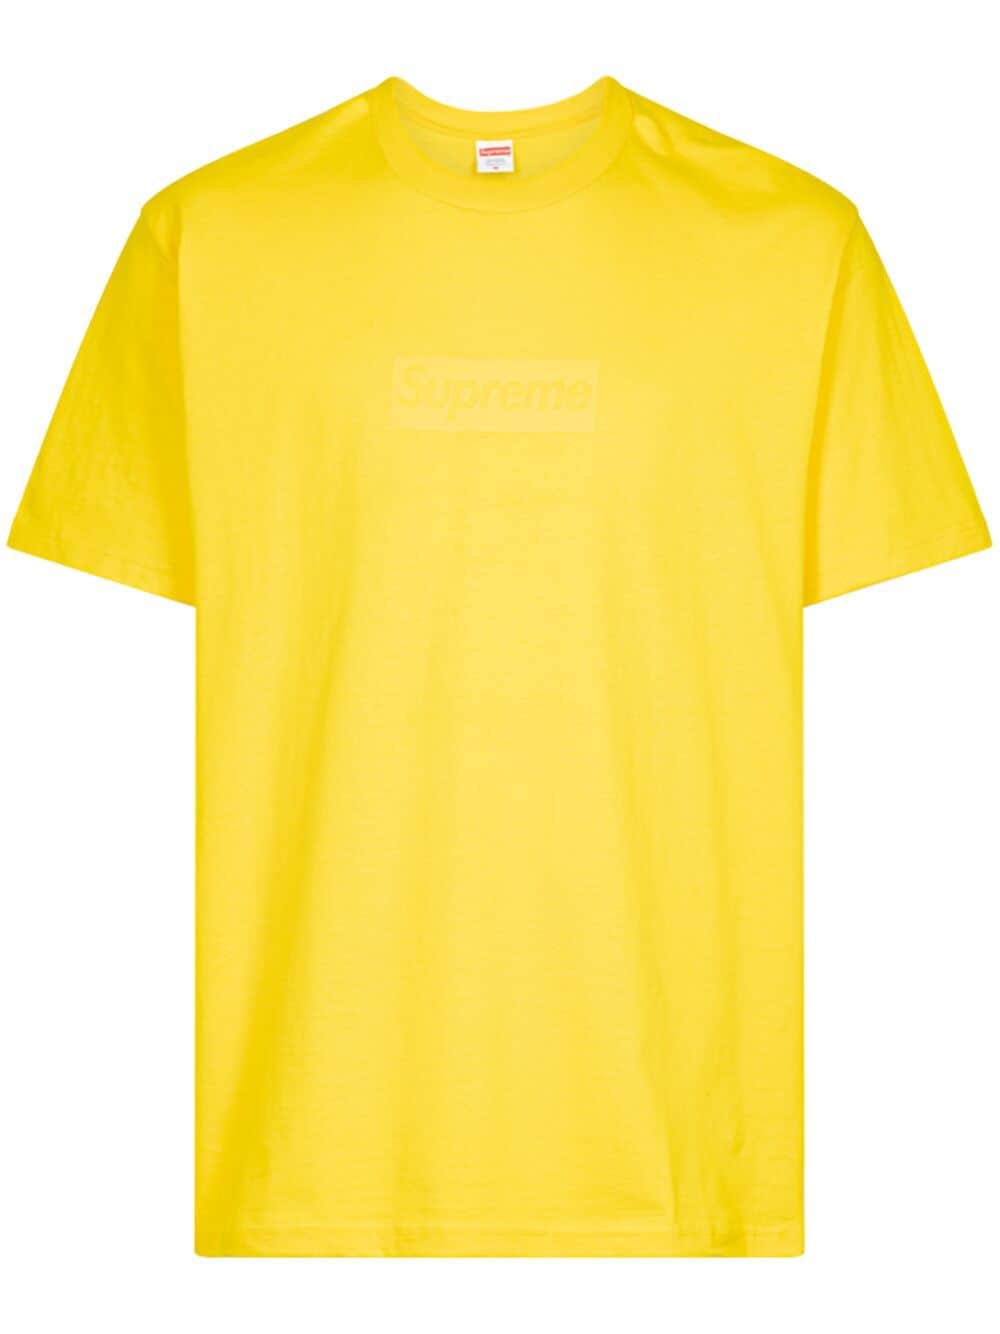 tonal box logo T-shirt